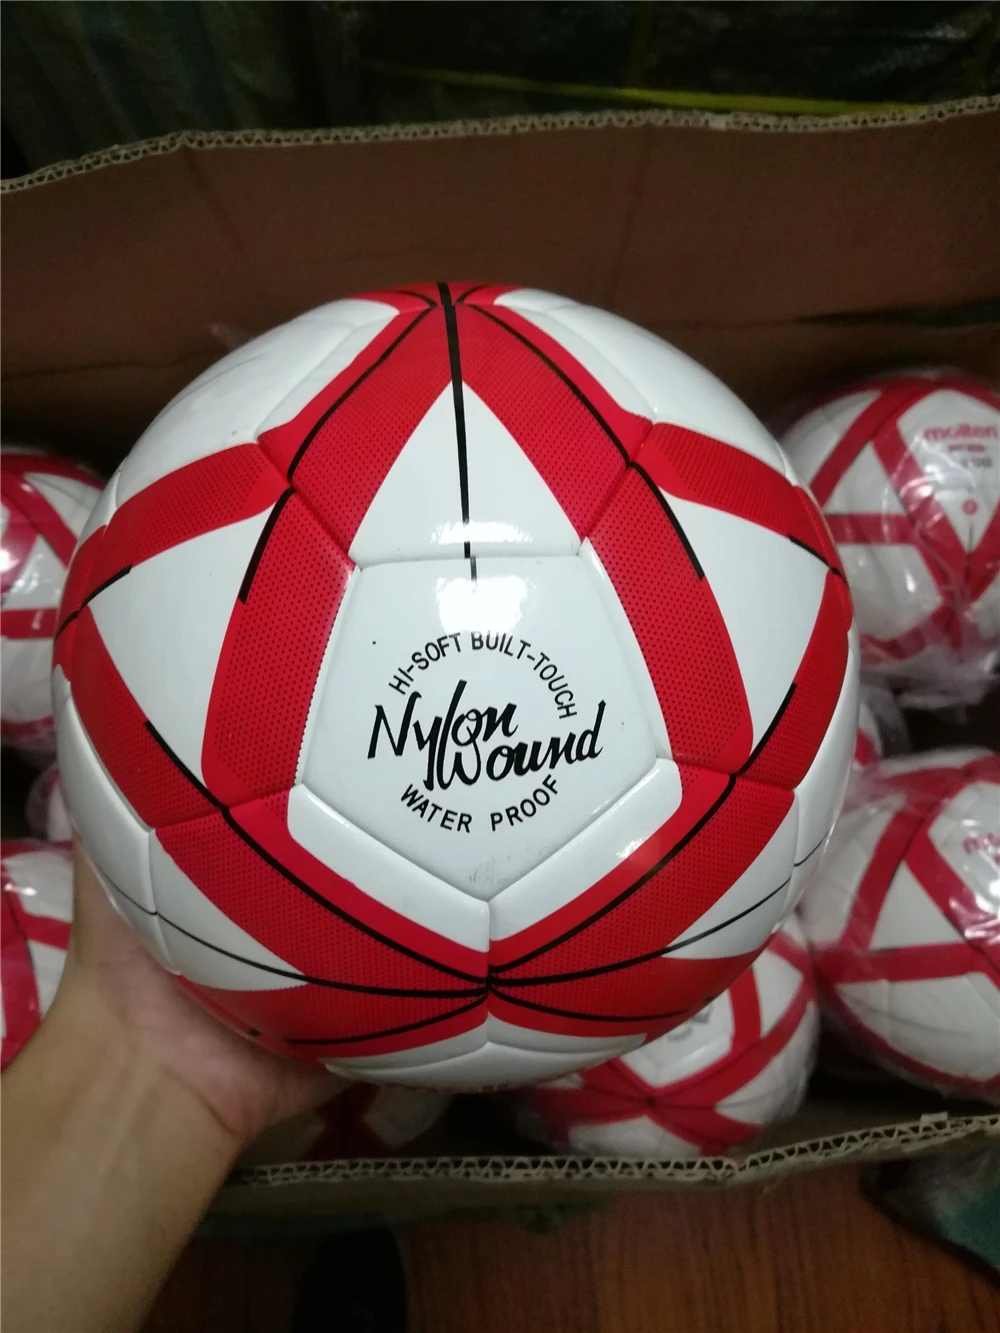 Molten FG Design Soccer Ball